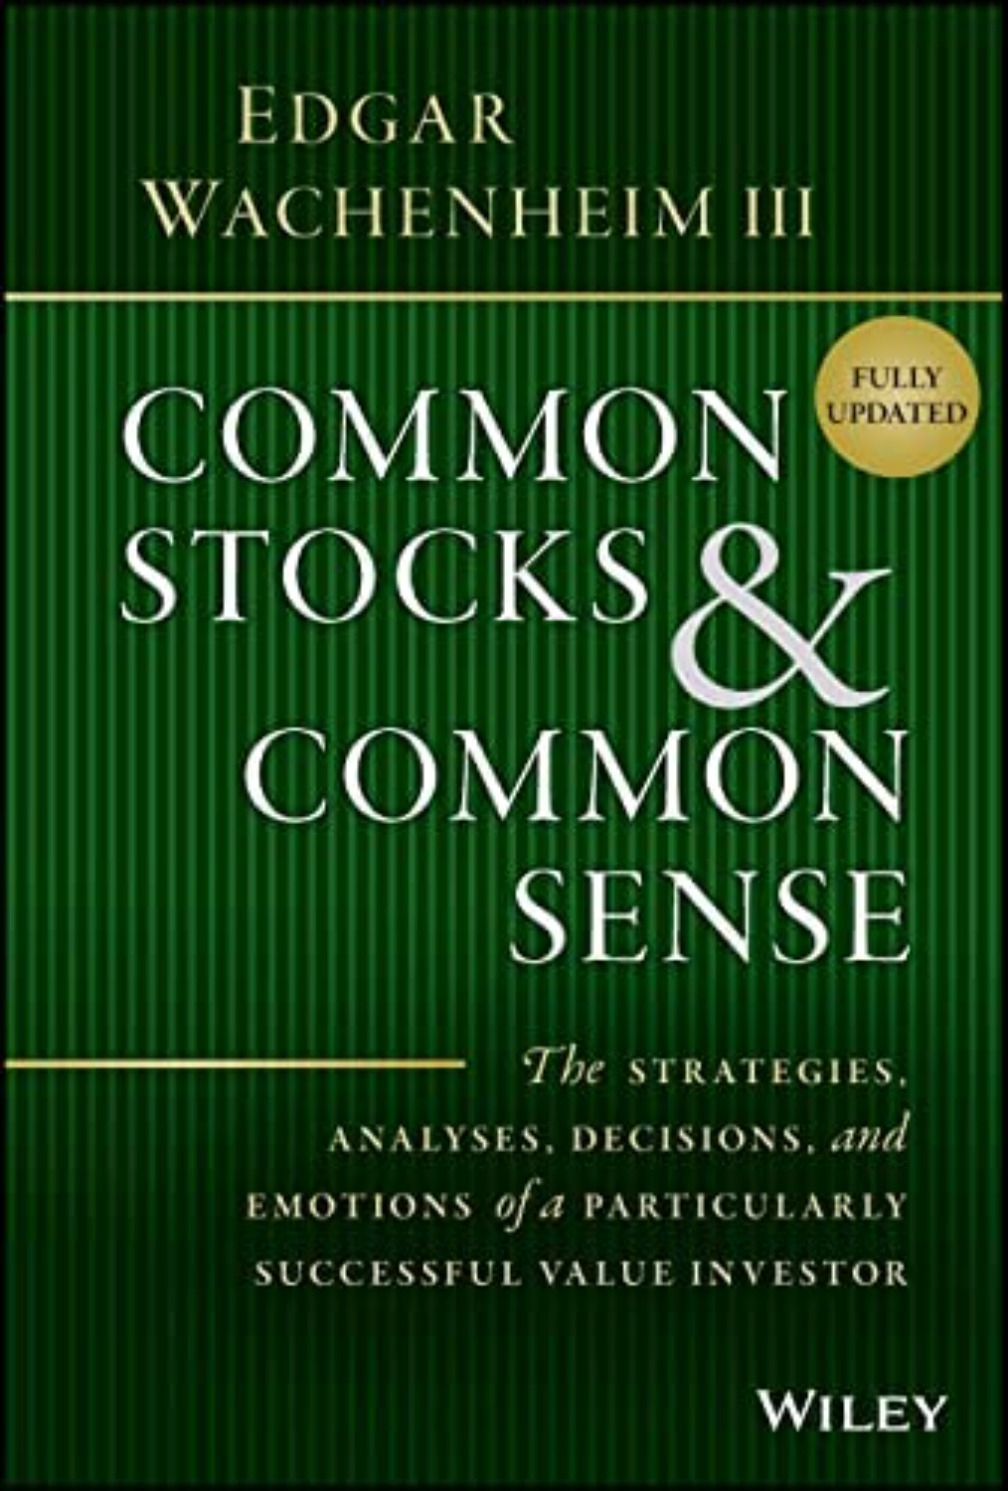 Common Stocks and Common Sense by Edgar Wachenheim III